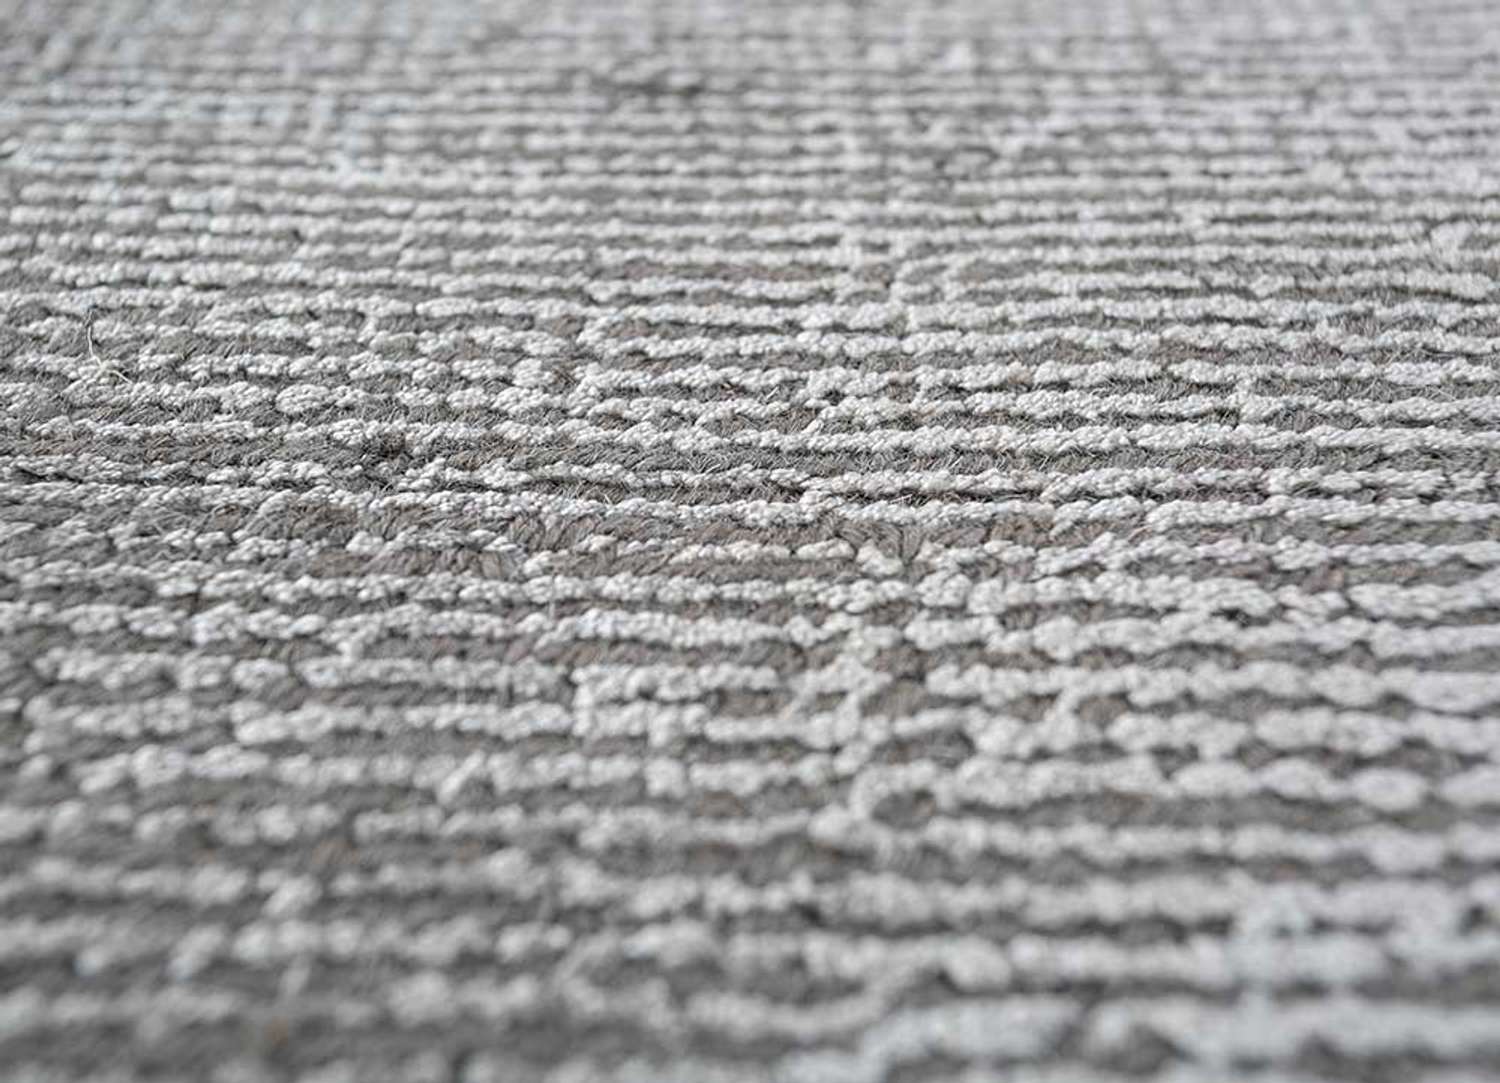 Designer tapijt - Colton - rechthoekig